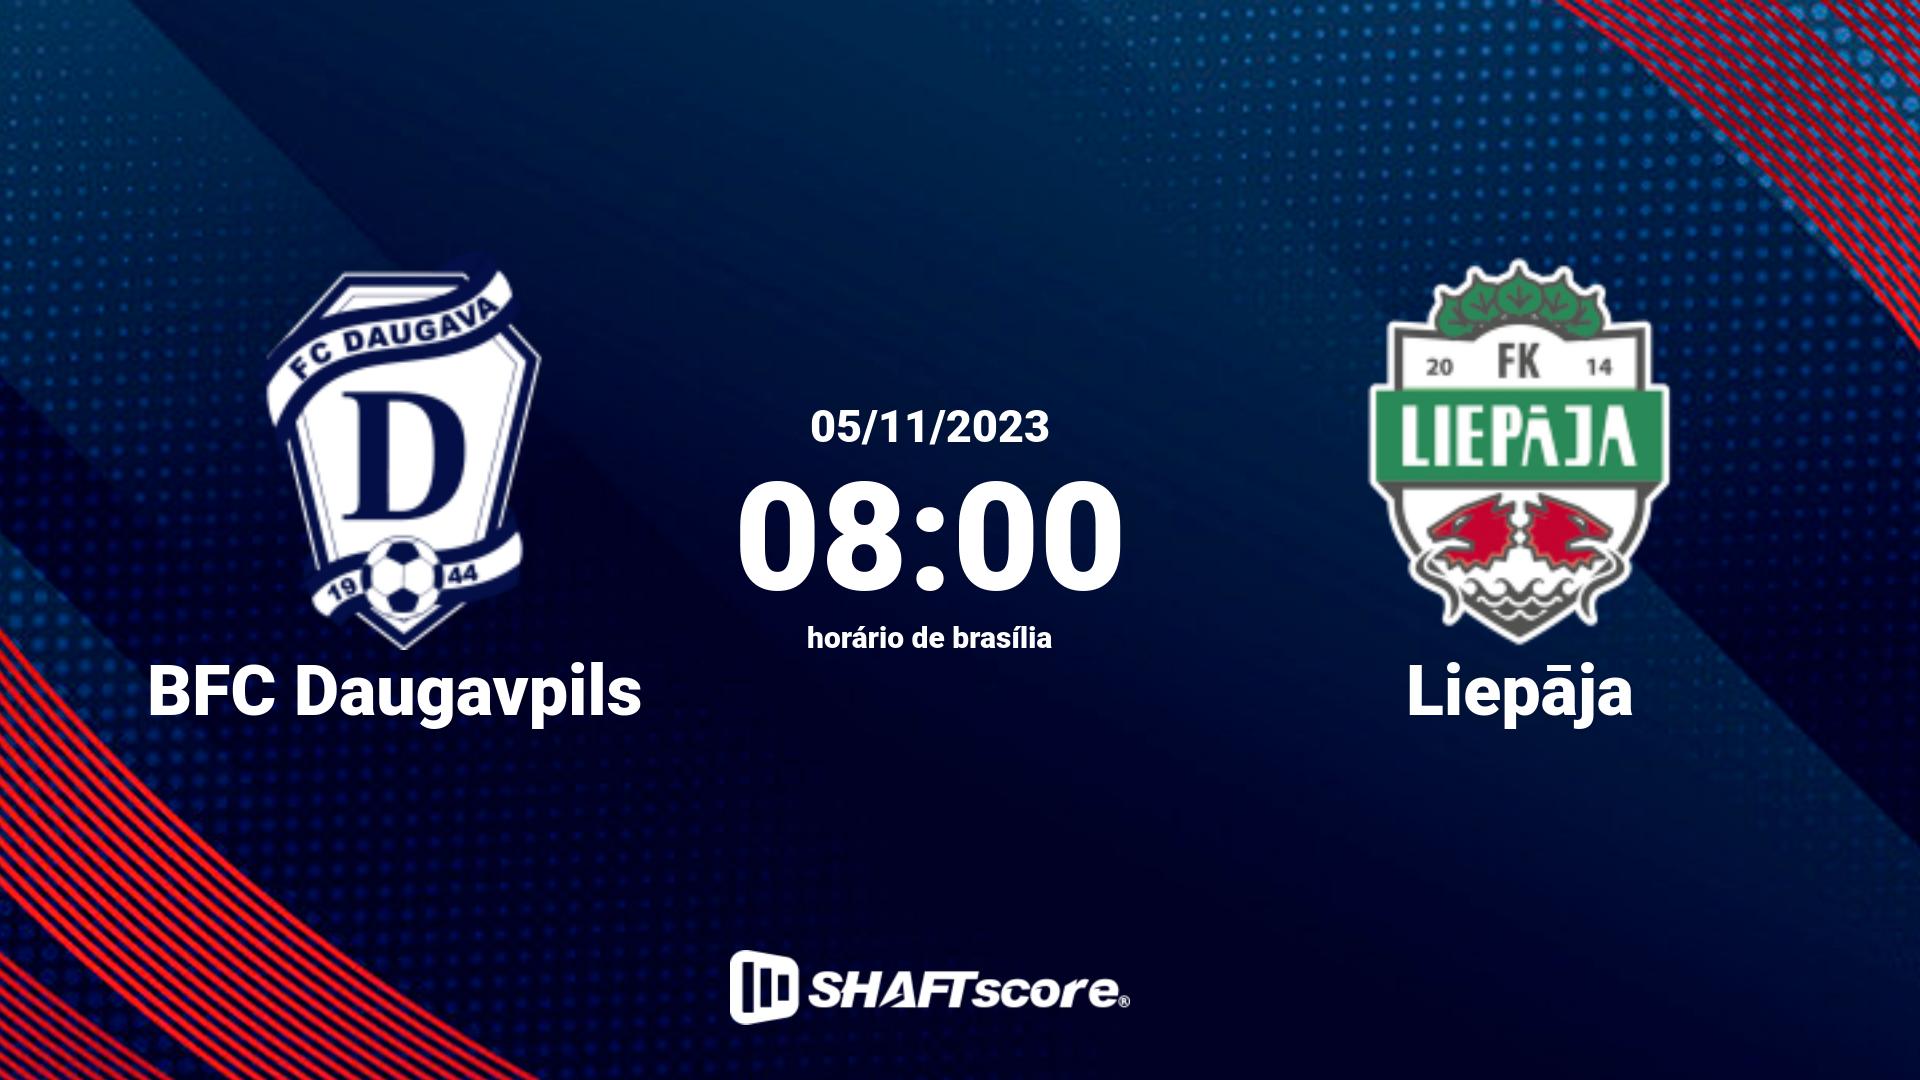 Estatísticas do jogo BFC Daugavpils vs Liepāja 05.11 08:00